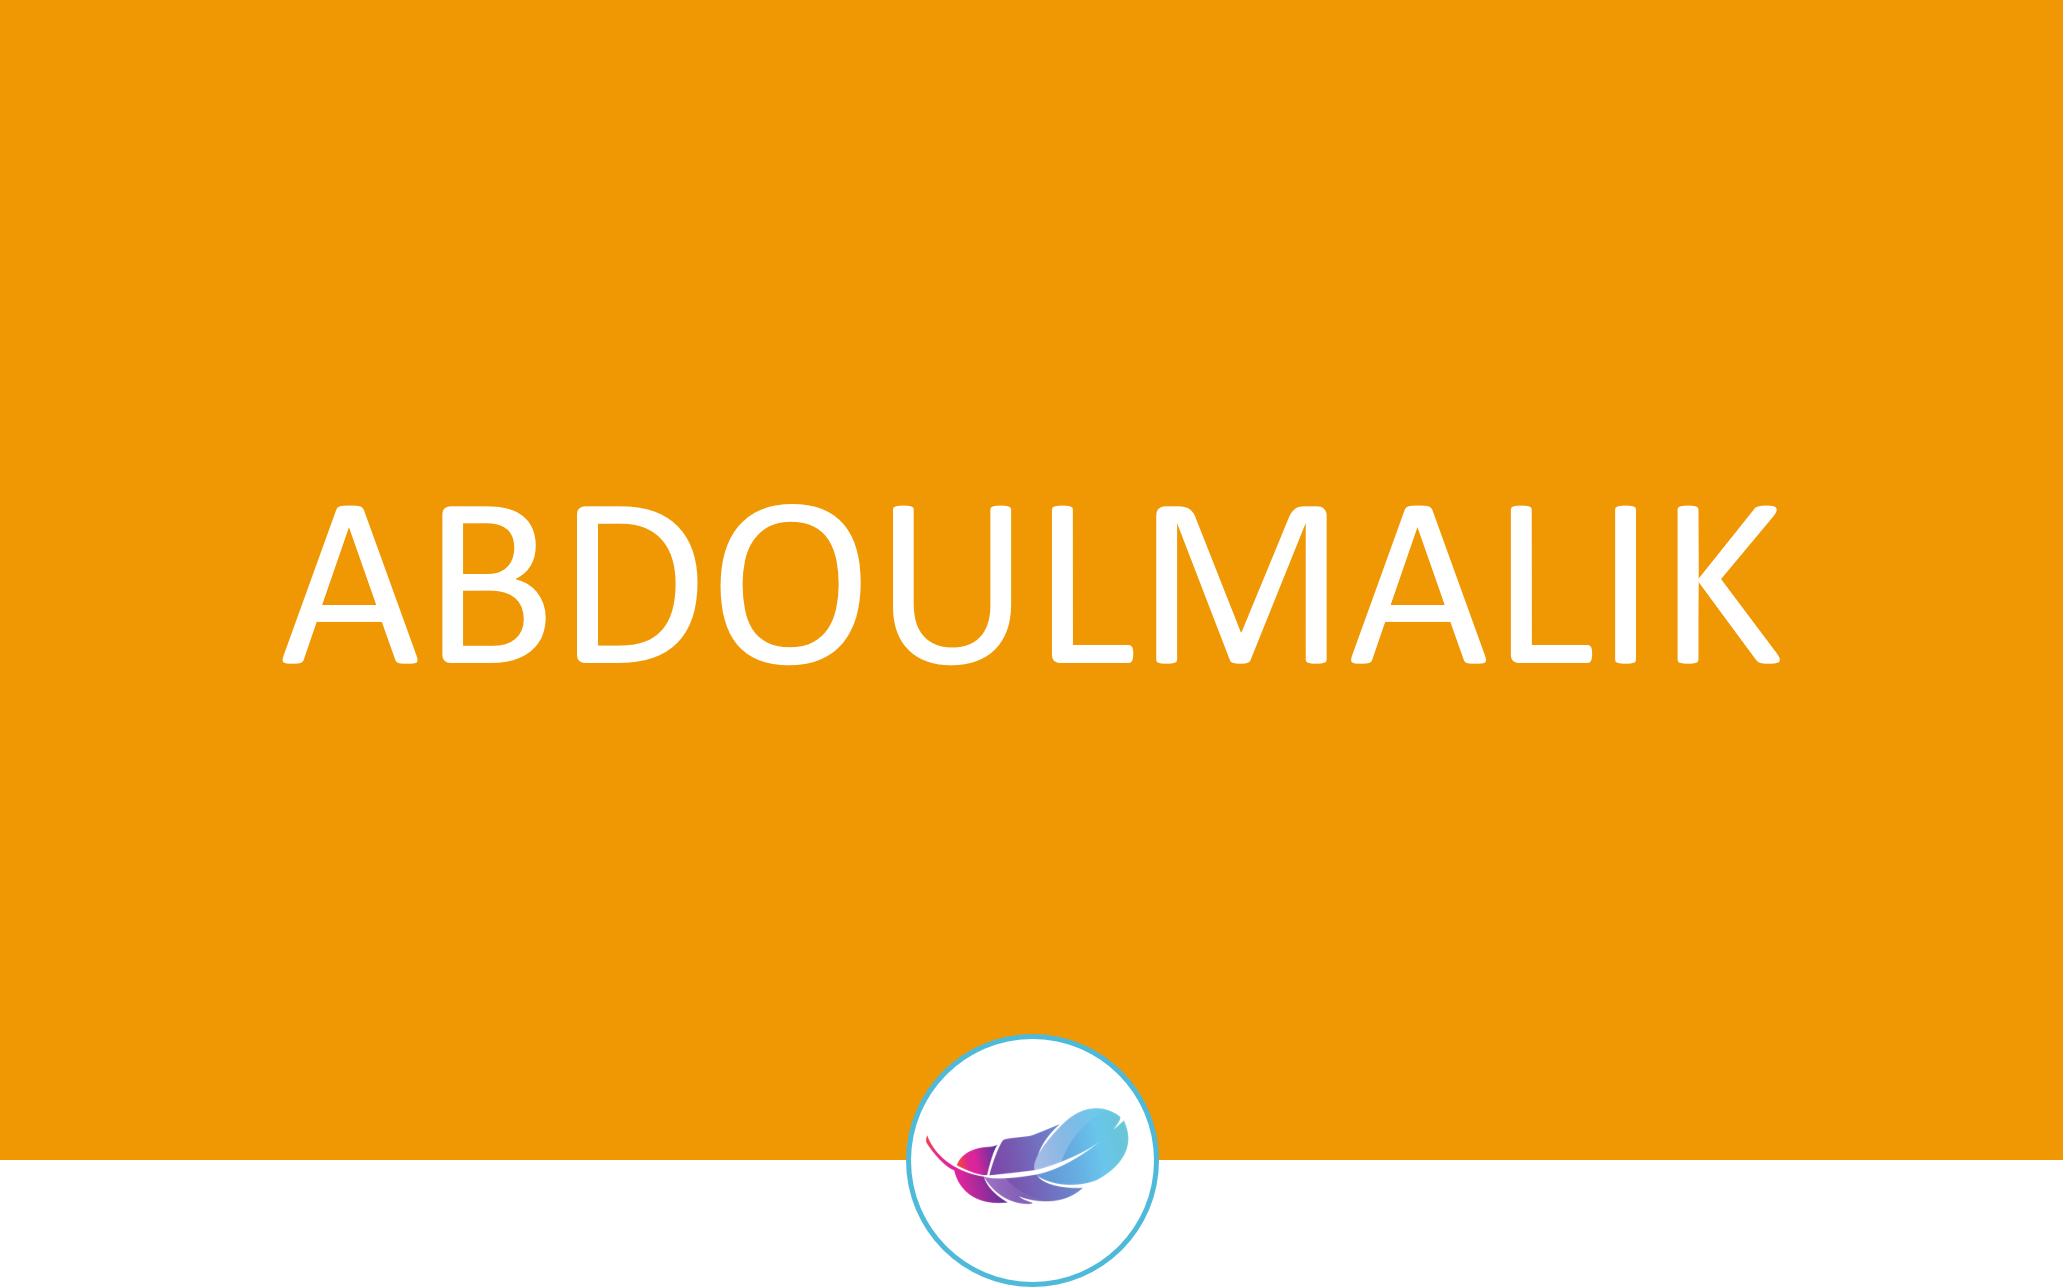 Abdoulmalik